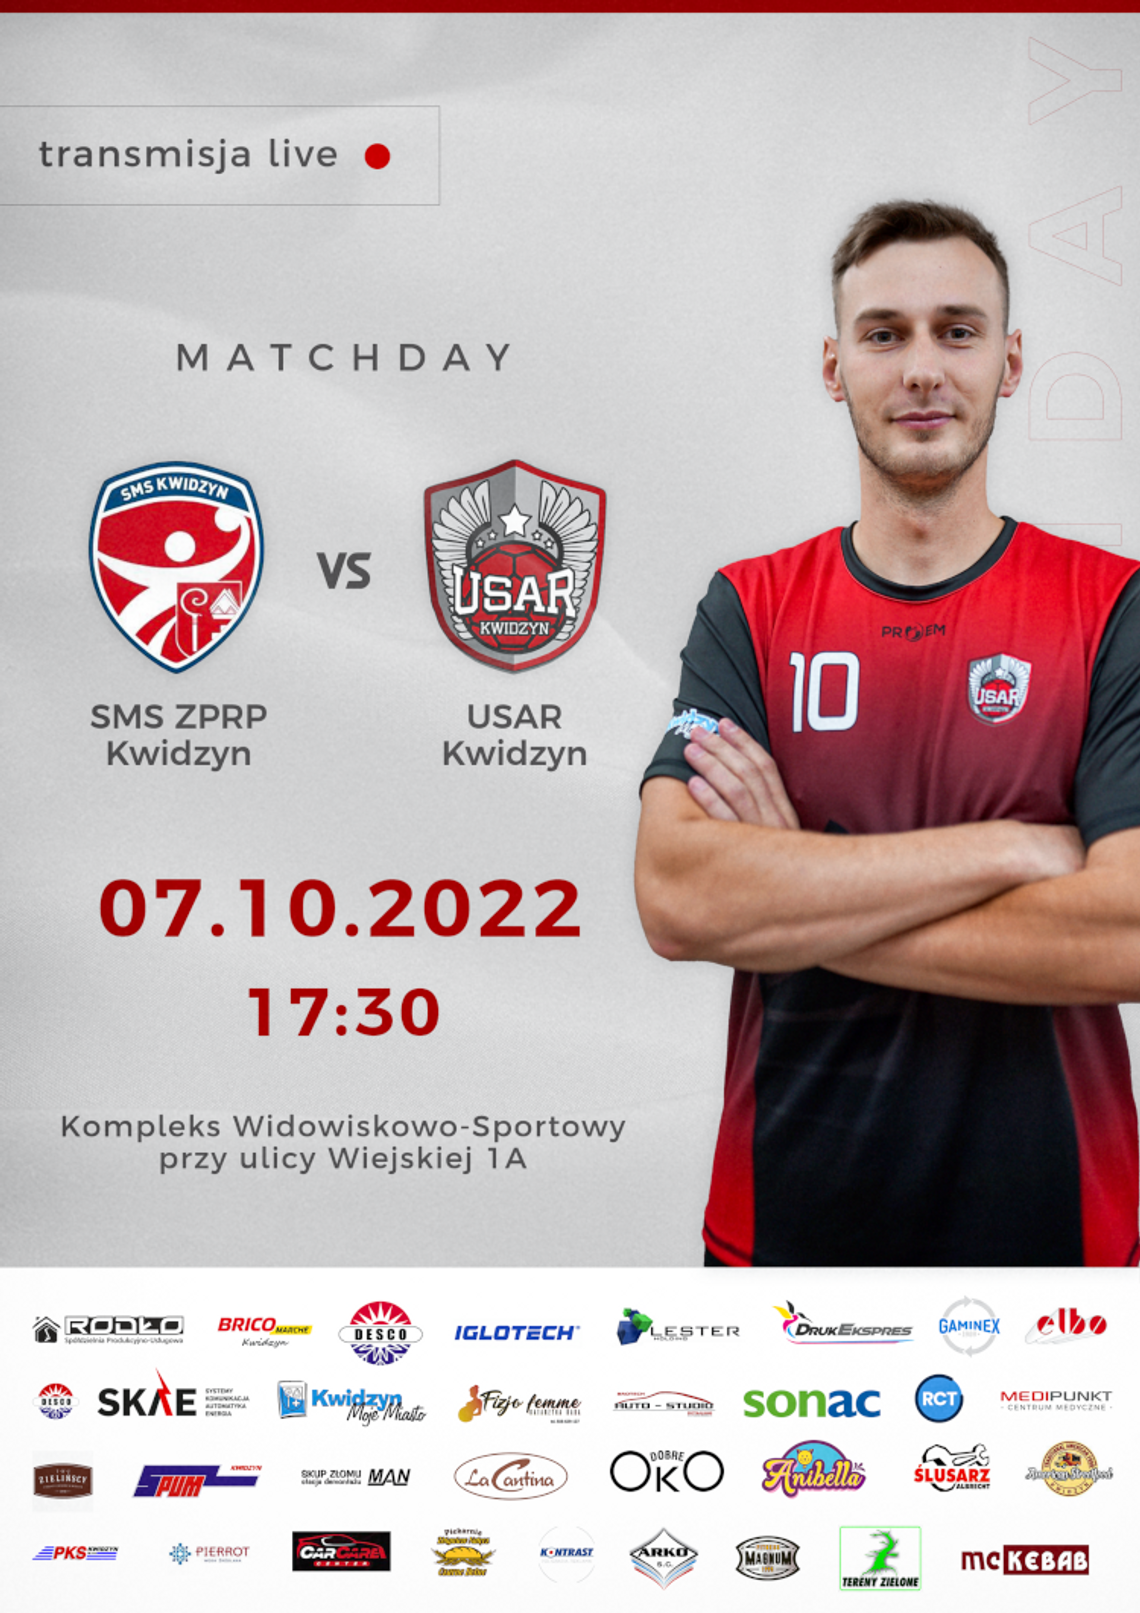 Kwidzyńskie derby!!! SMS ZPRP Kwidzyn - USAR Kwidzyn